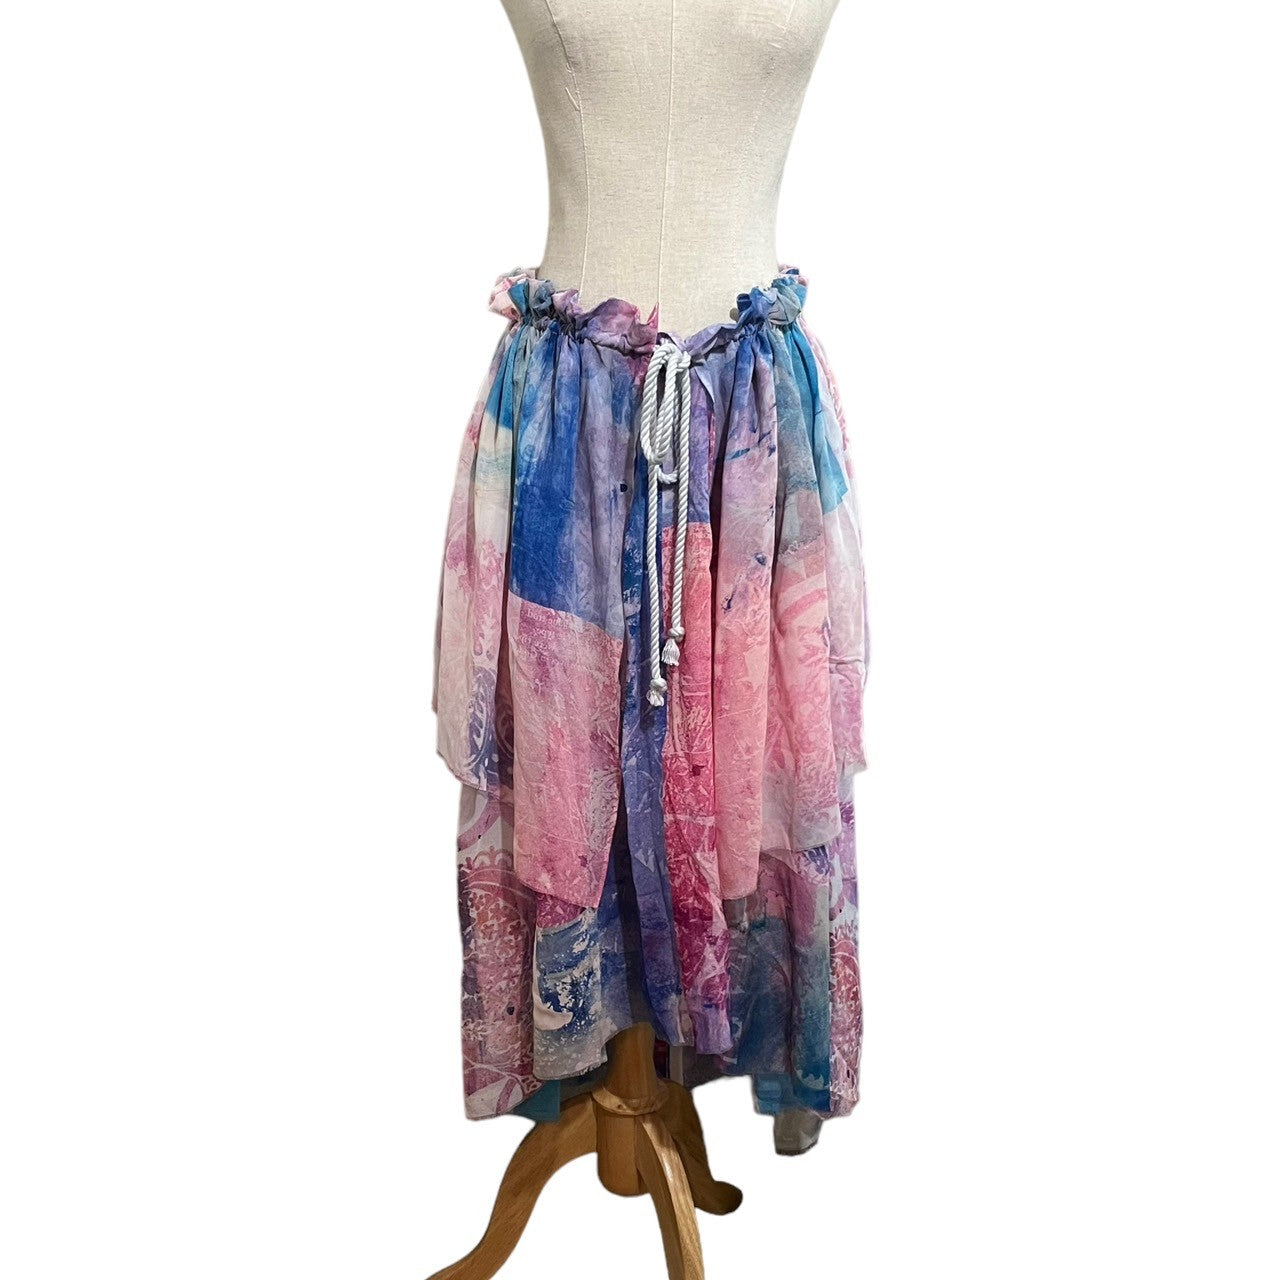 divka(ディウカ) All-silk layered drawcord skirt 総 シルク レイヤード ドローコード スカート DK03-01B-S04 2(M) マルチカラー